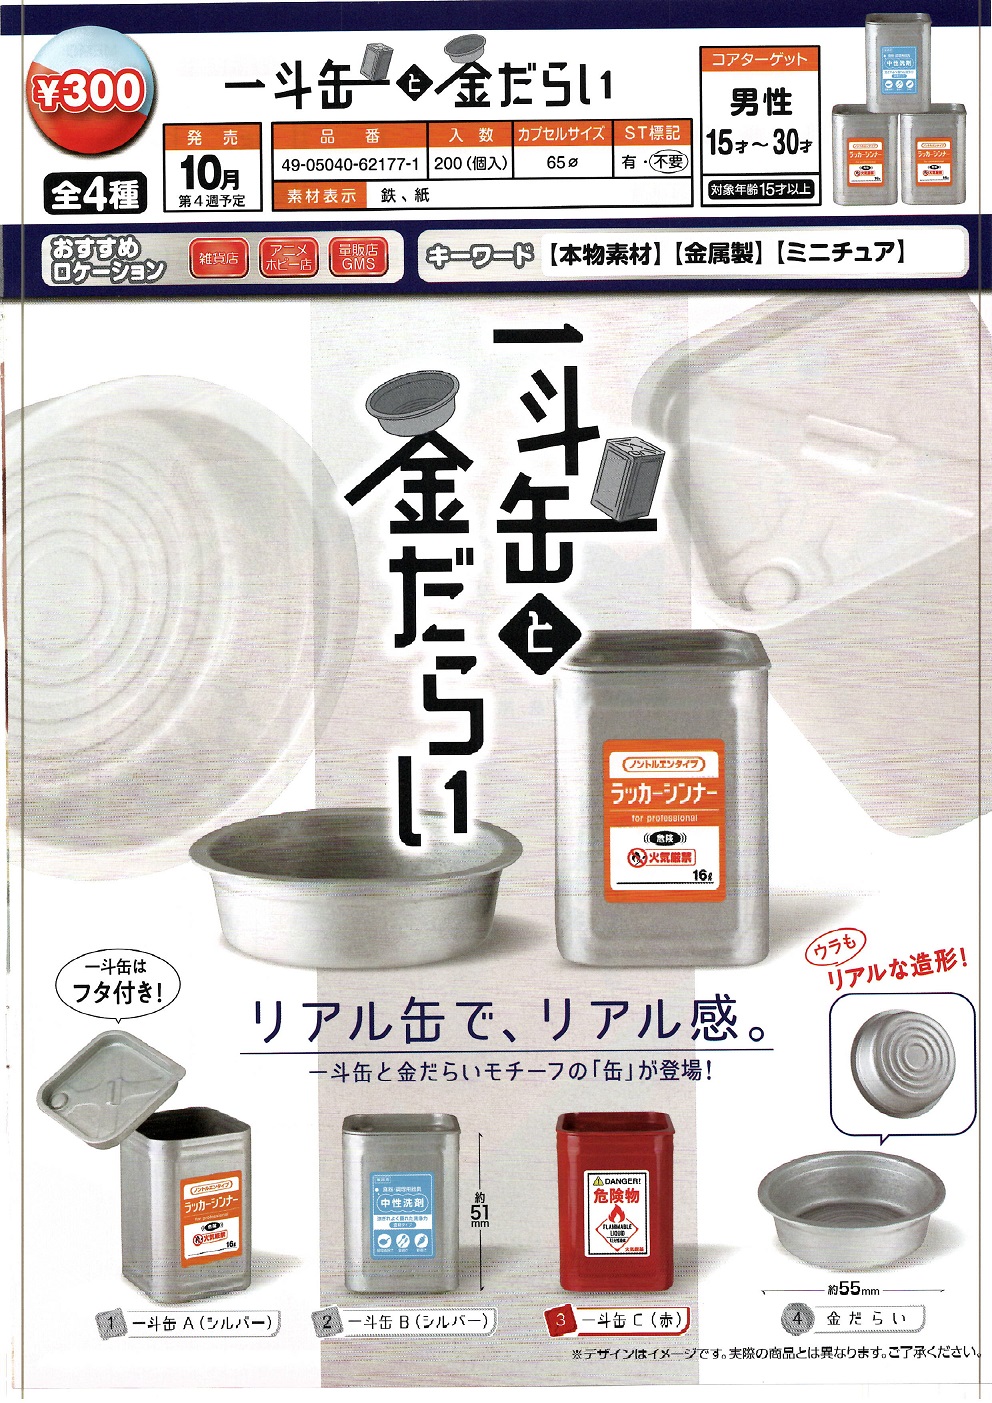 【B】300日元扭蛋 摆件 金属罐 全4种 (1袋40个) 621771